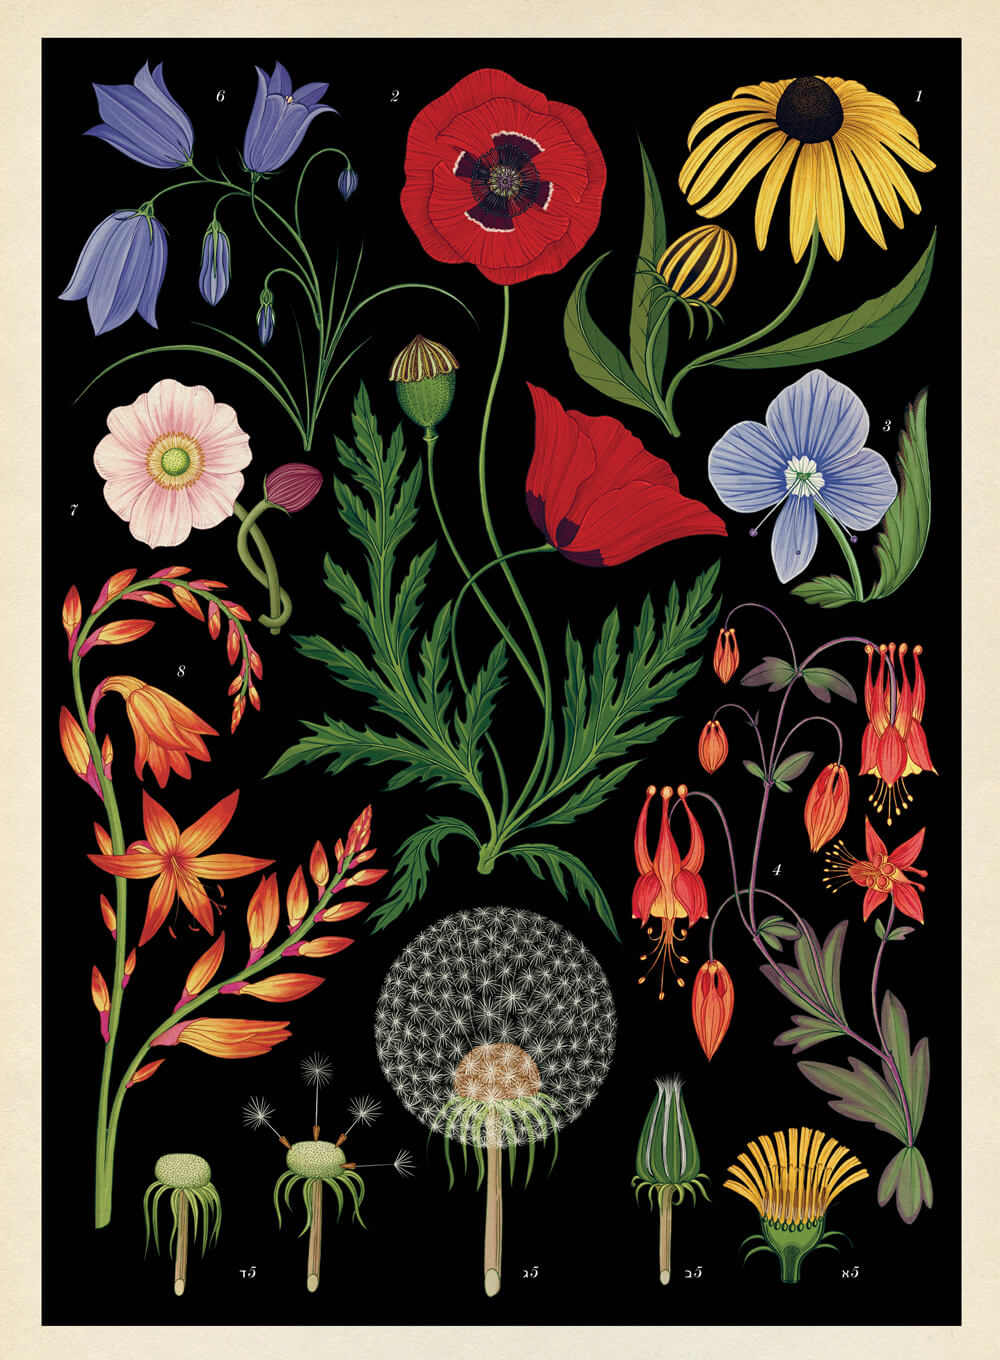 מגזין מקו ועד תרבות / מיזם דיגיטלי ללא צרכי רווח Botanicum</br>Katie Scott & Kathy Willis</br></br>"מוזיאון הצמחים" – ספר אמנות מרגש  